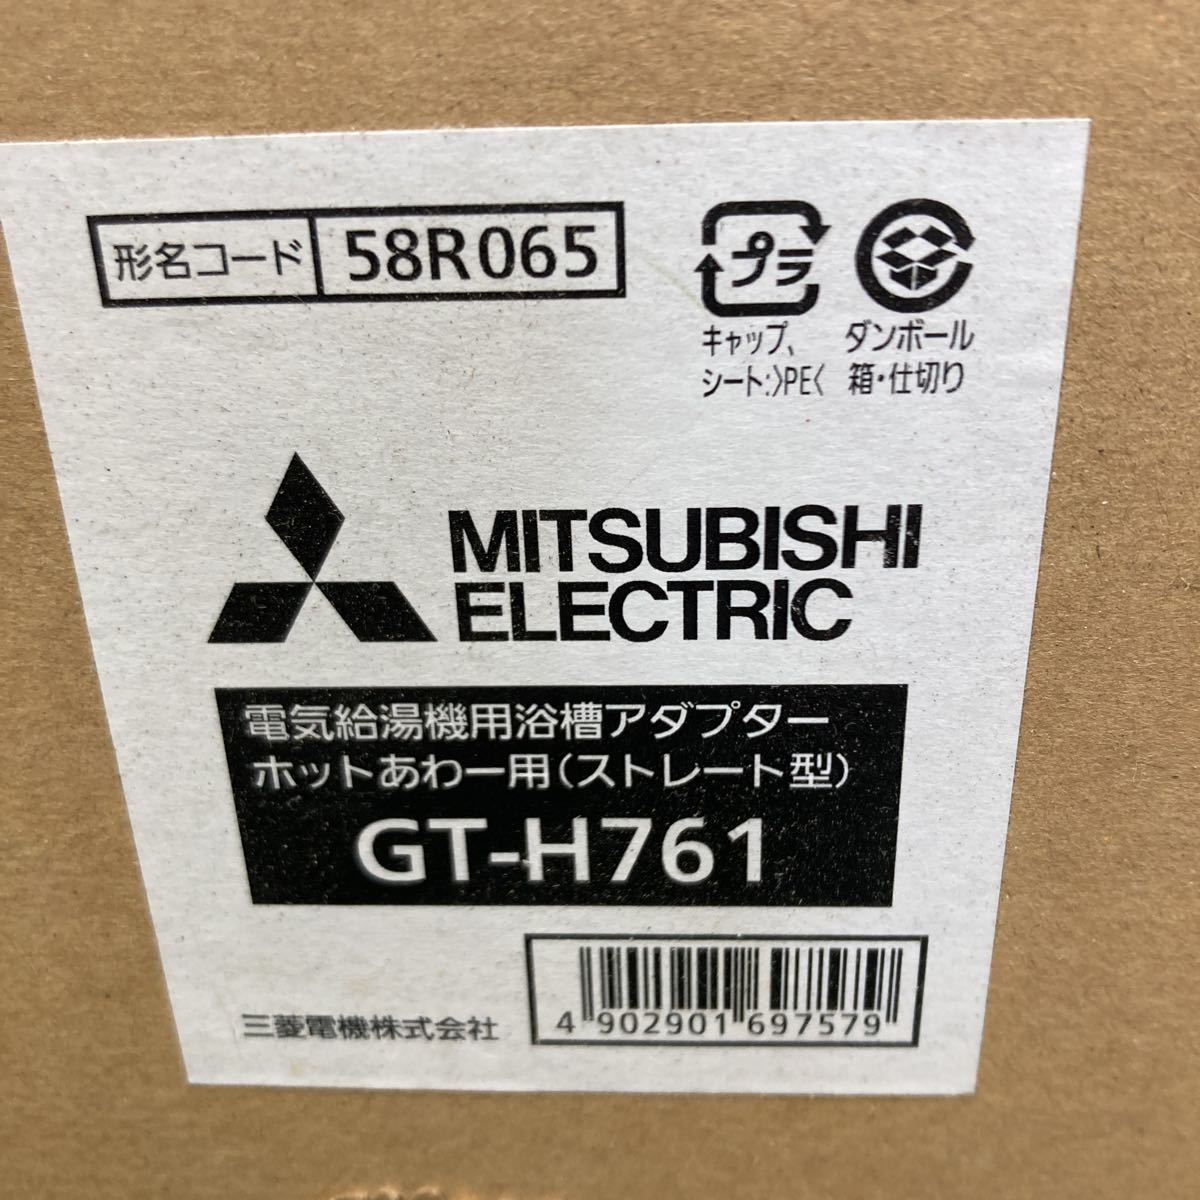 三菱/MITSUBISHI 電気給湯機用浴槽アダプター ホットあわー用 GT-H761 ストレート型 エコキュート用 領収書 1712_画像2